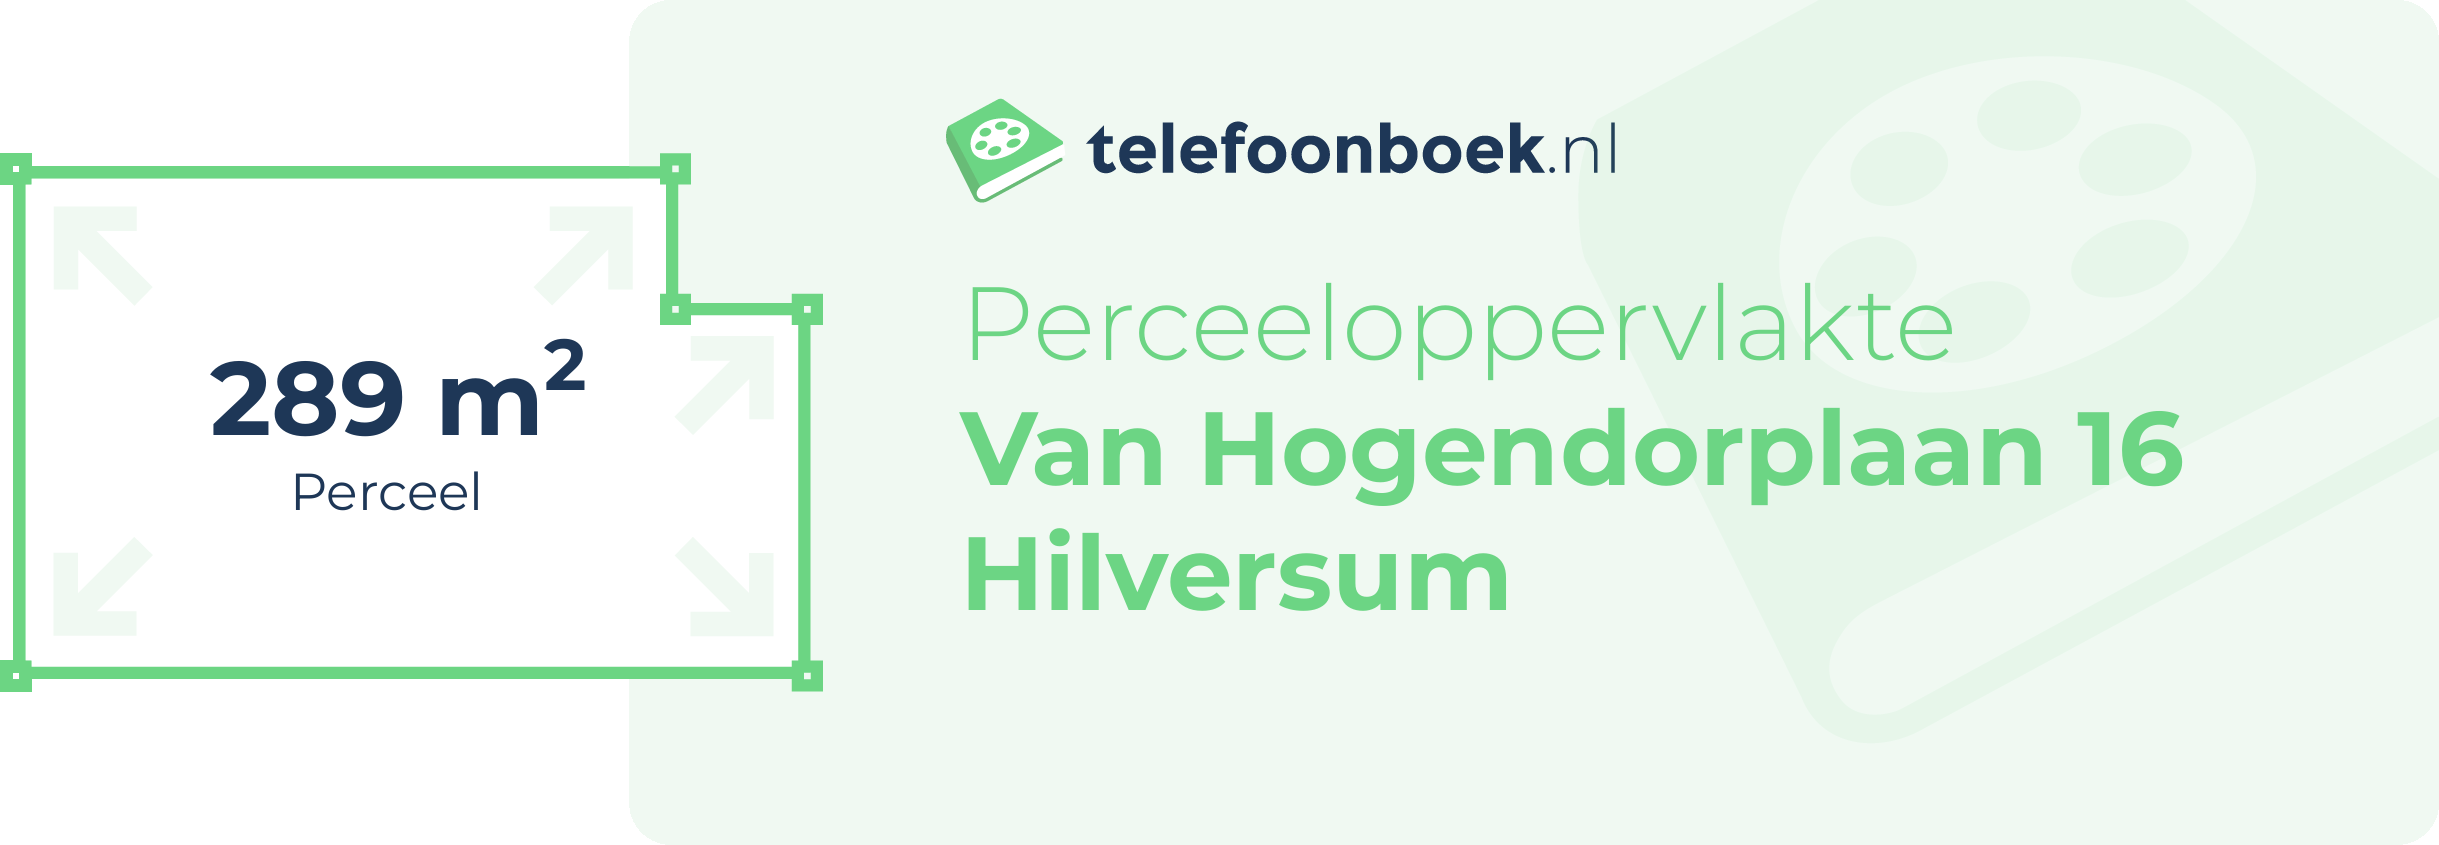 Perceeloppervlakte Van Hogendorplaan 16 Hilversum